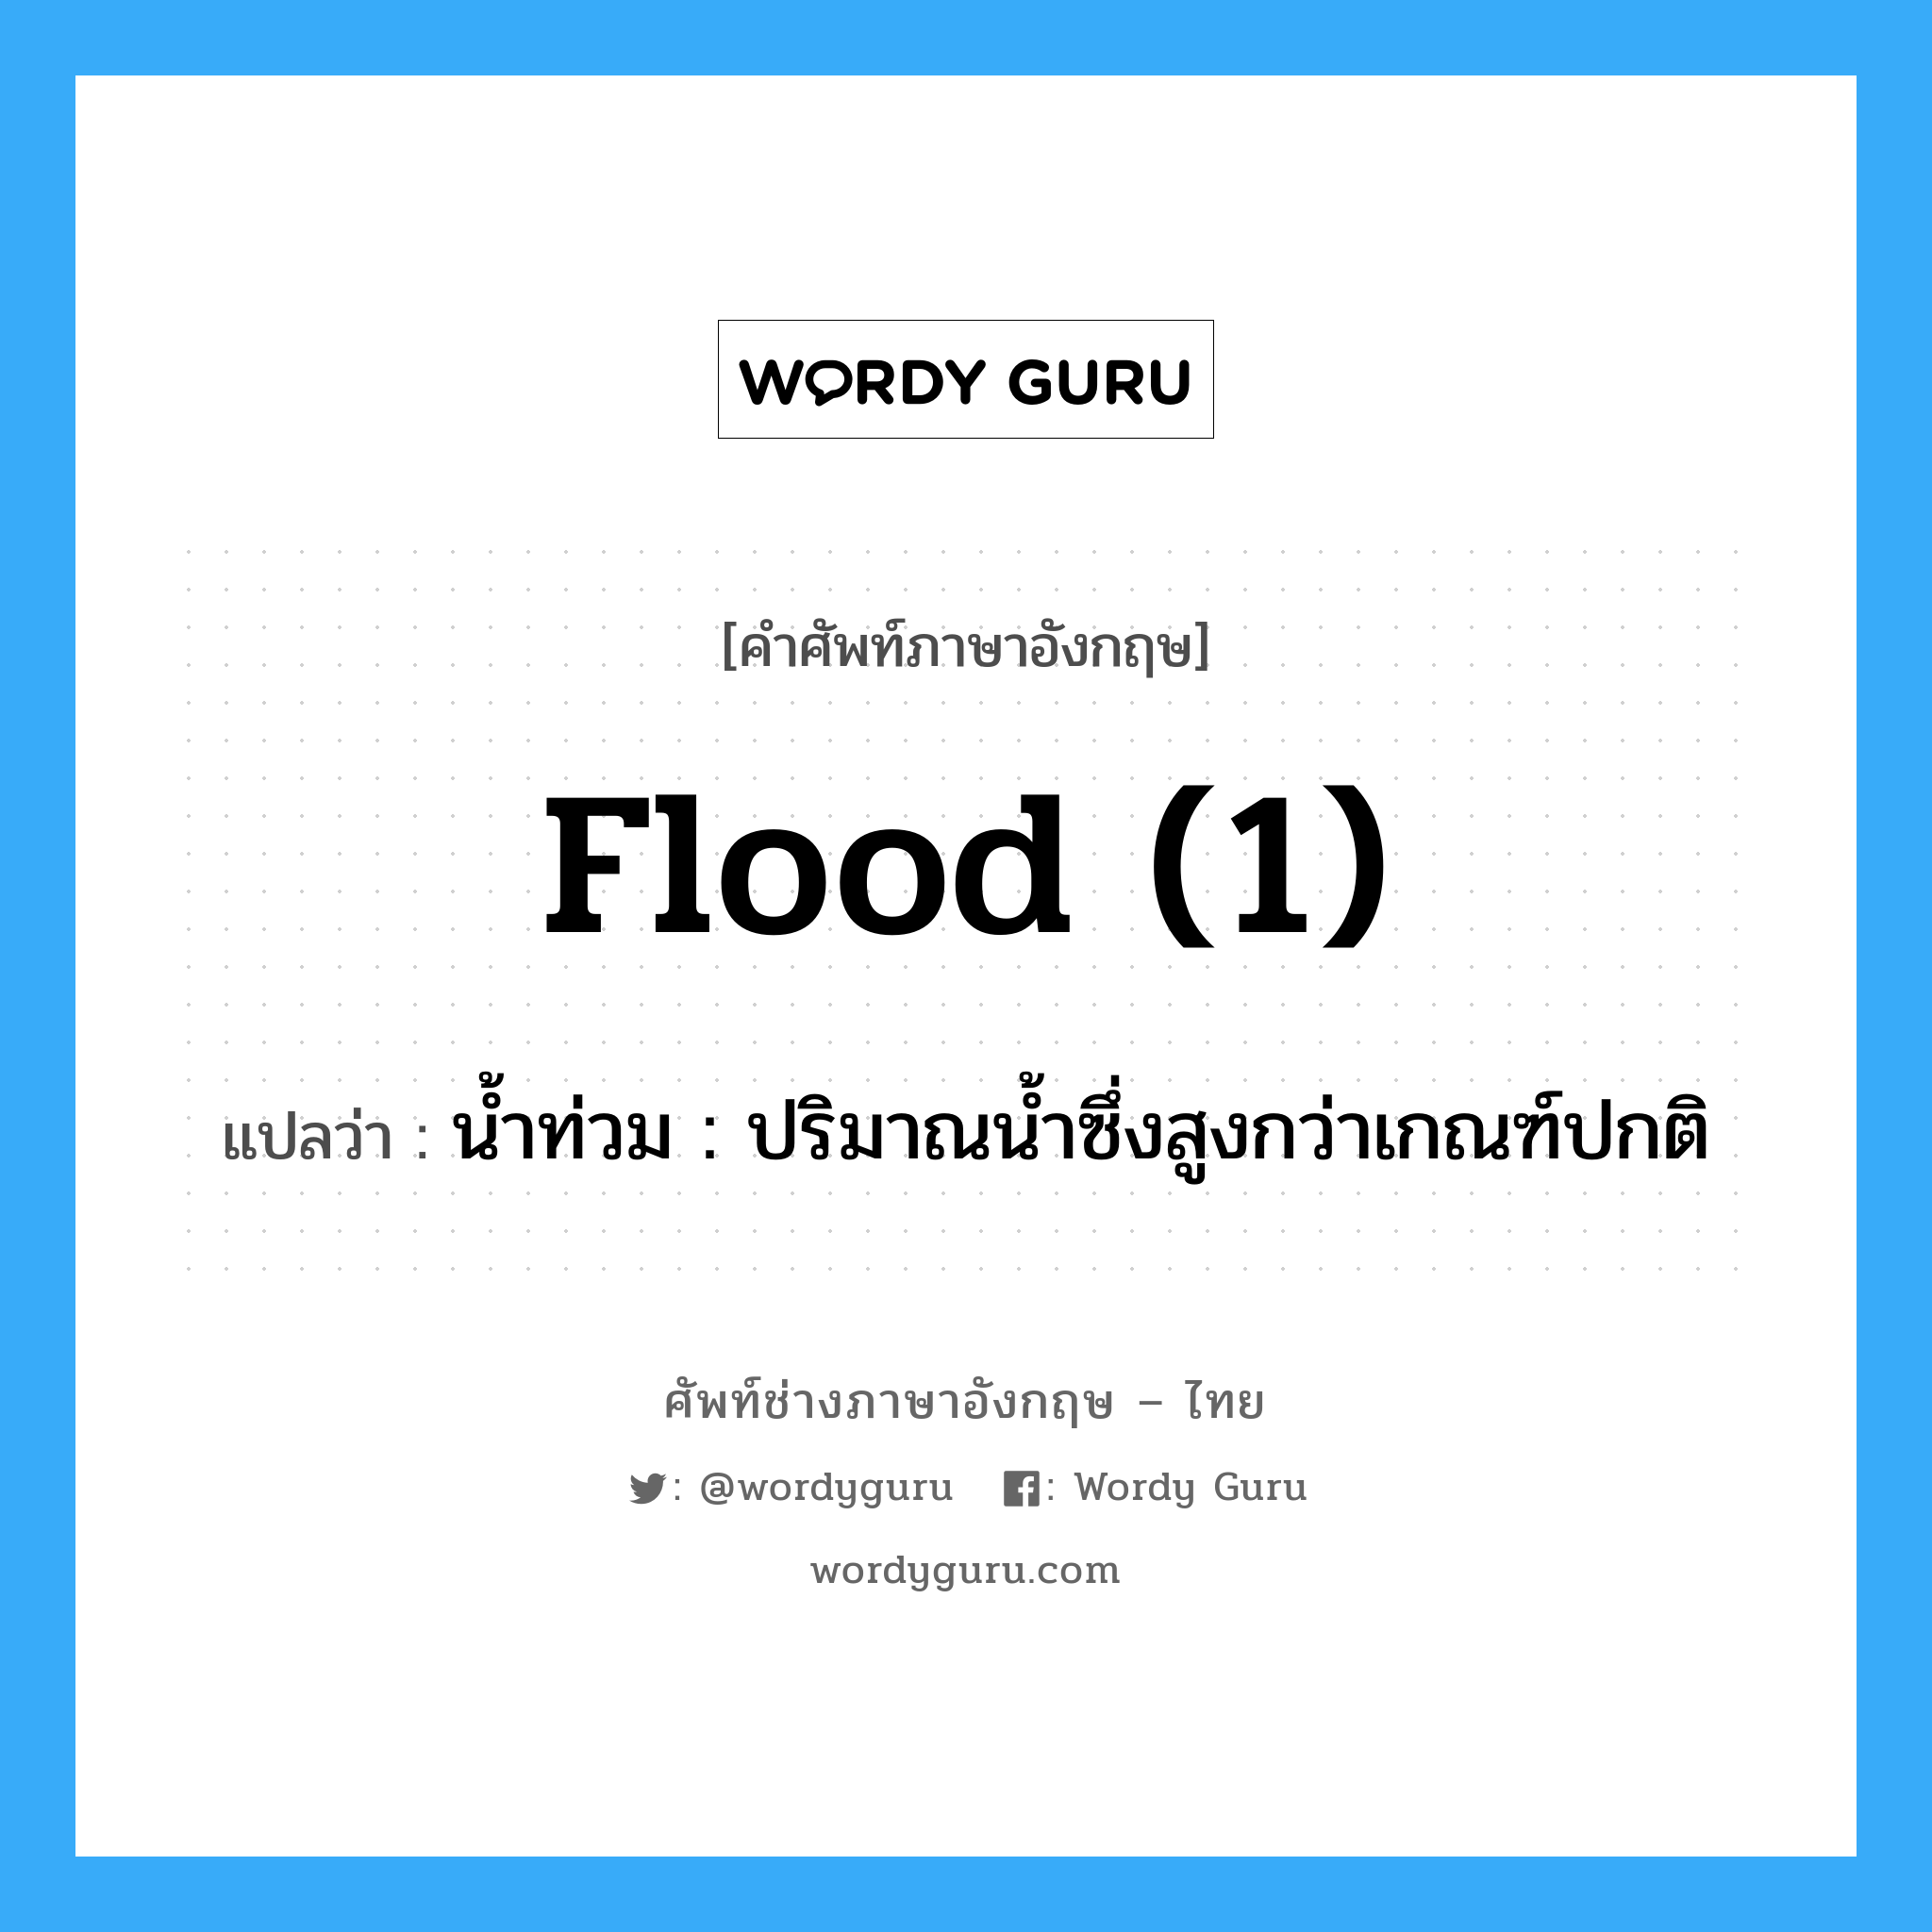 flood (1) แปลว่า?, คำศัพท์ช่างภาษาอังกฤษ - ไทย flood (1) คำศัพท์ภาษาอังกฤษ flood (1) แปลว่า น้ำท่วม : ปริมาณน้ำซึ่งสูงกว่าเกณฑ์ปกติ